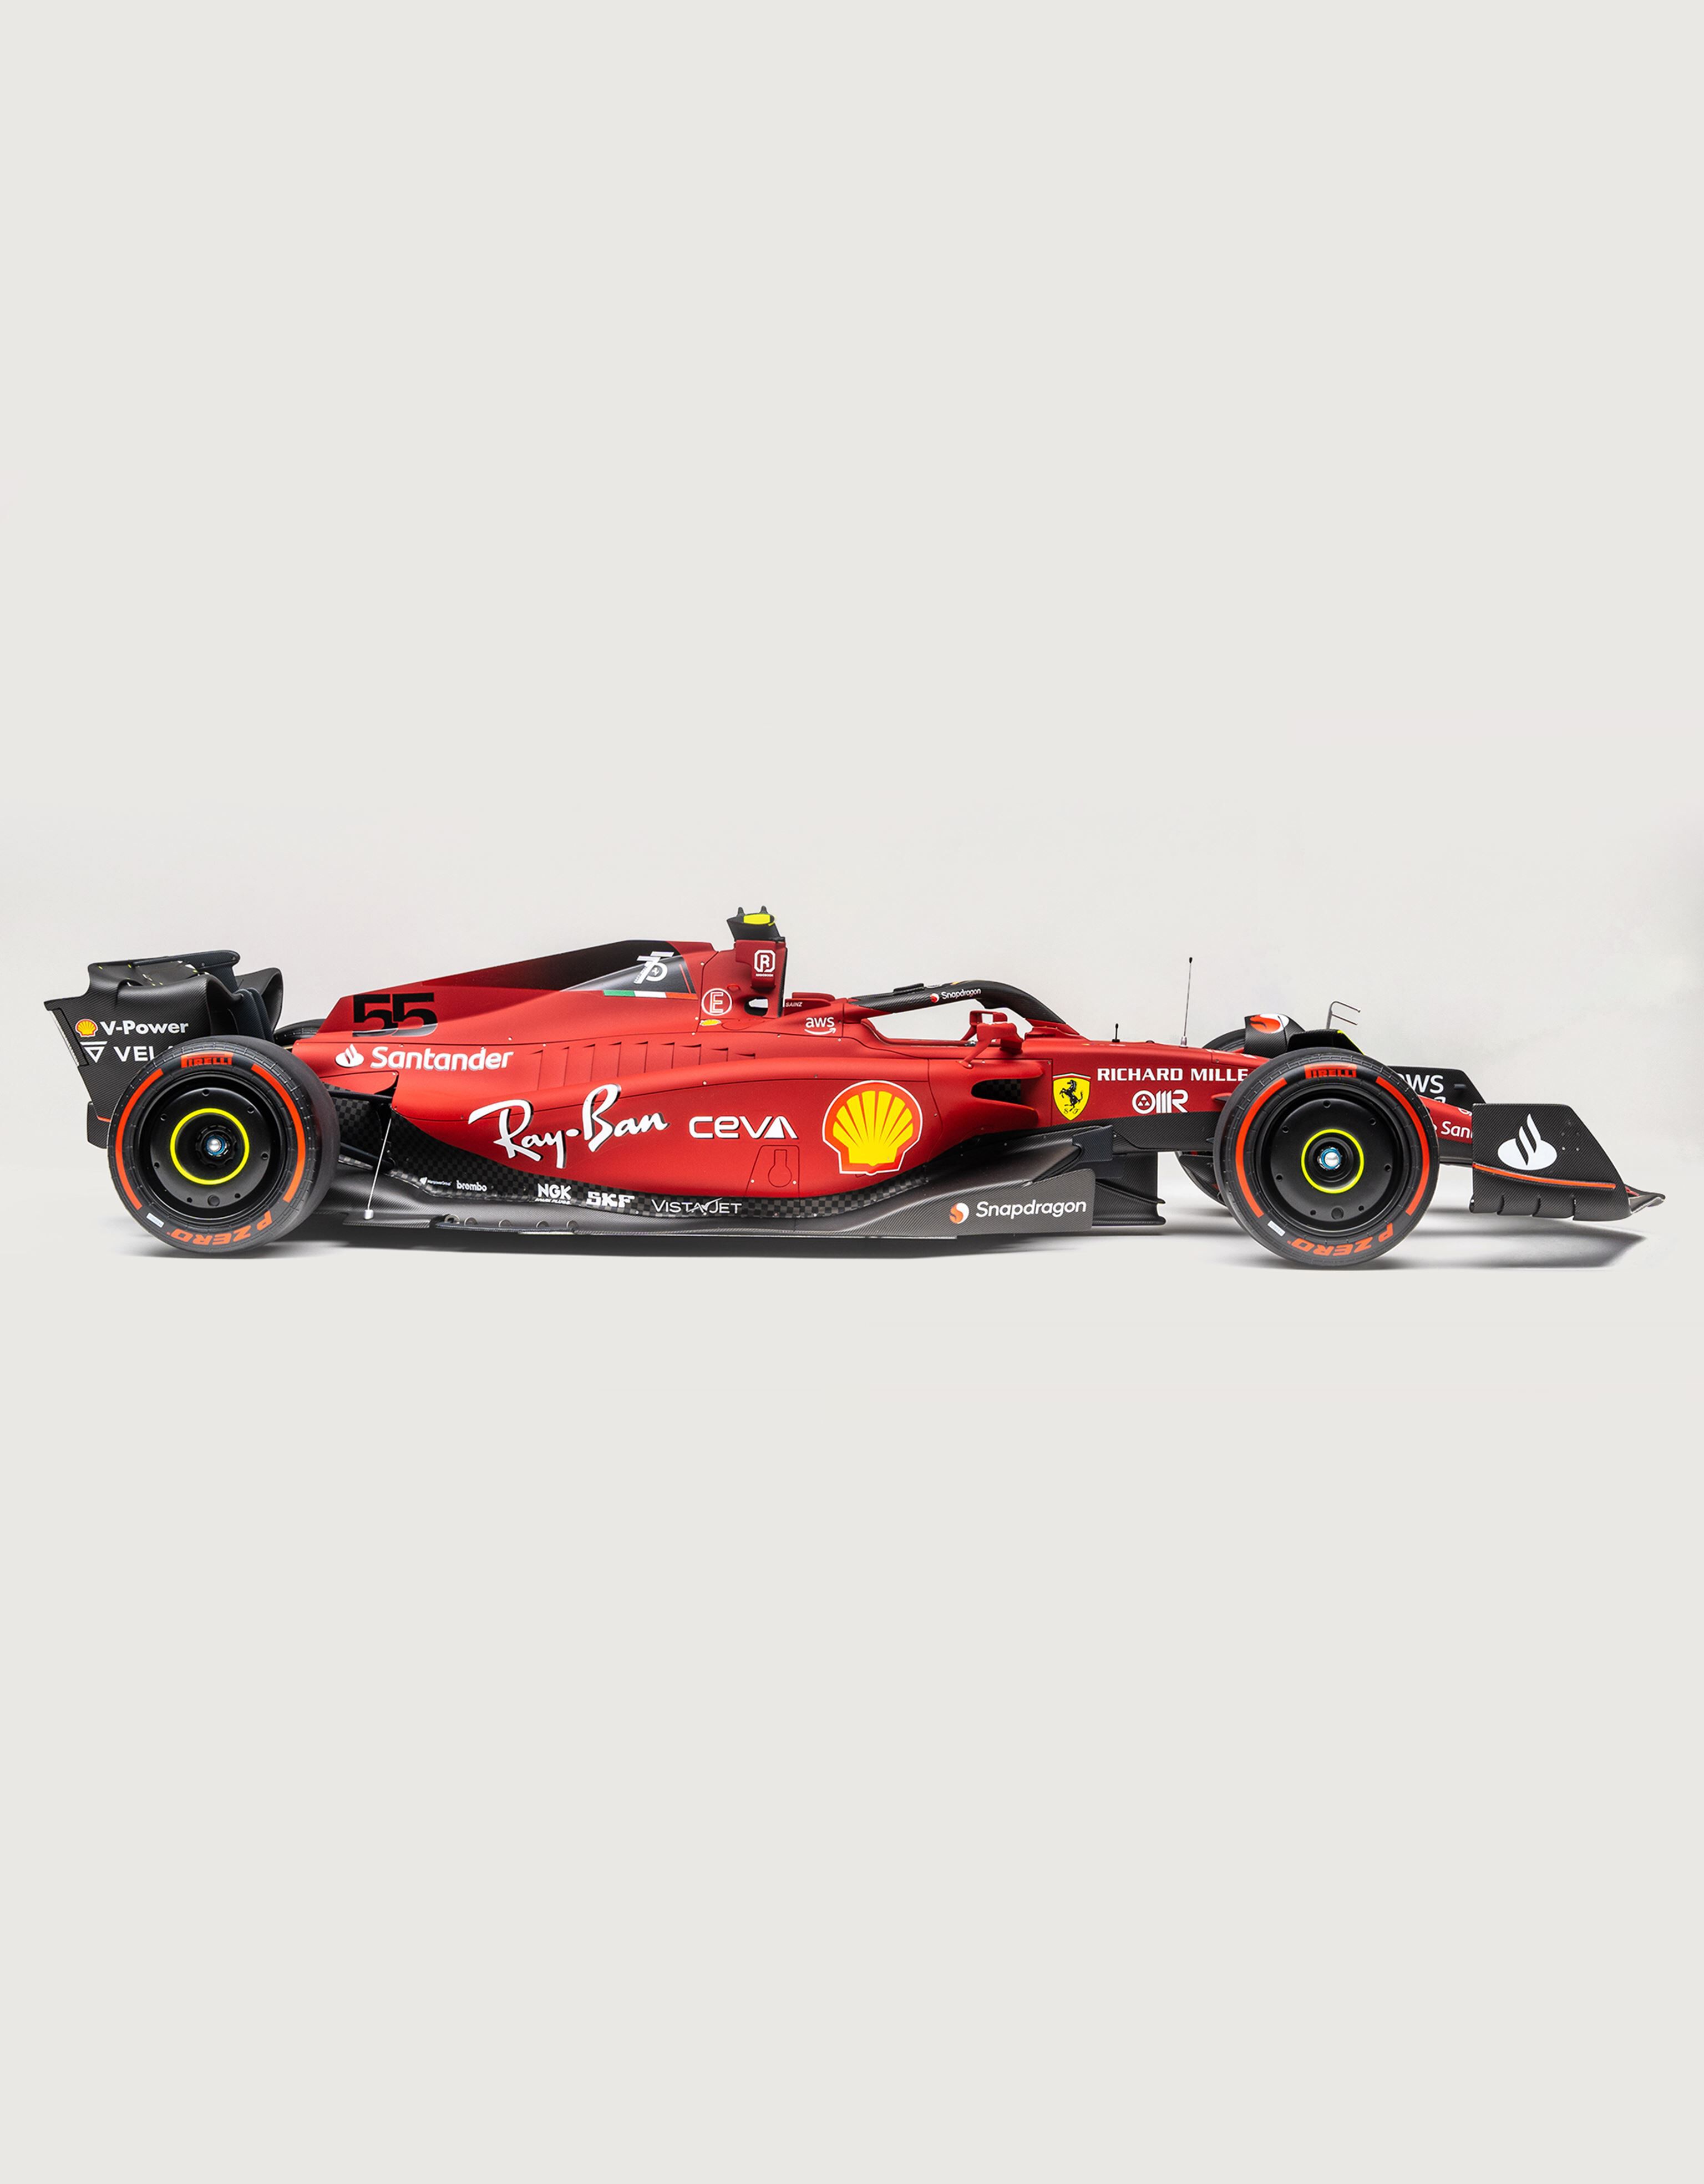 Ferrari F1-75 カルロス・サインツ モデルカー 1:8スケール、レッドの 